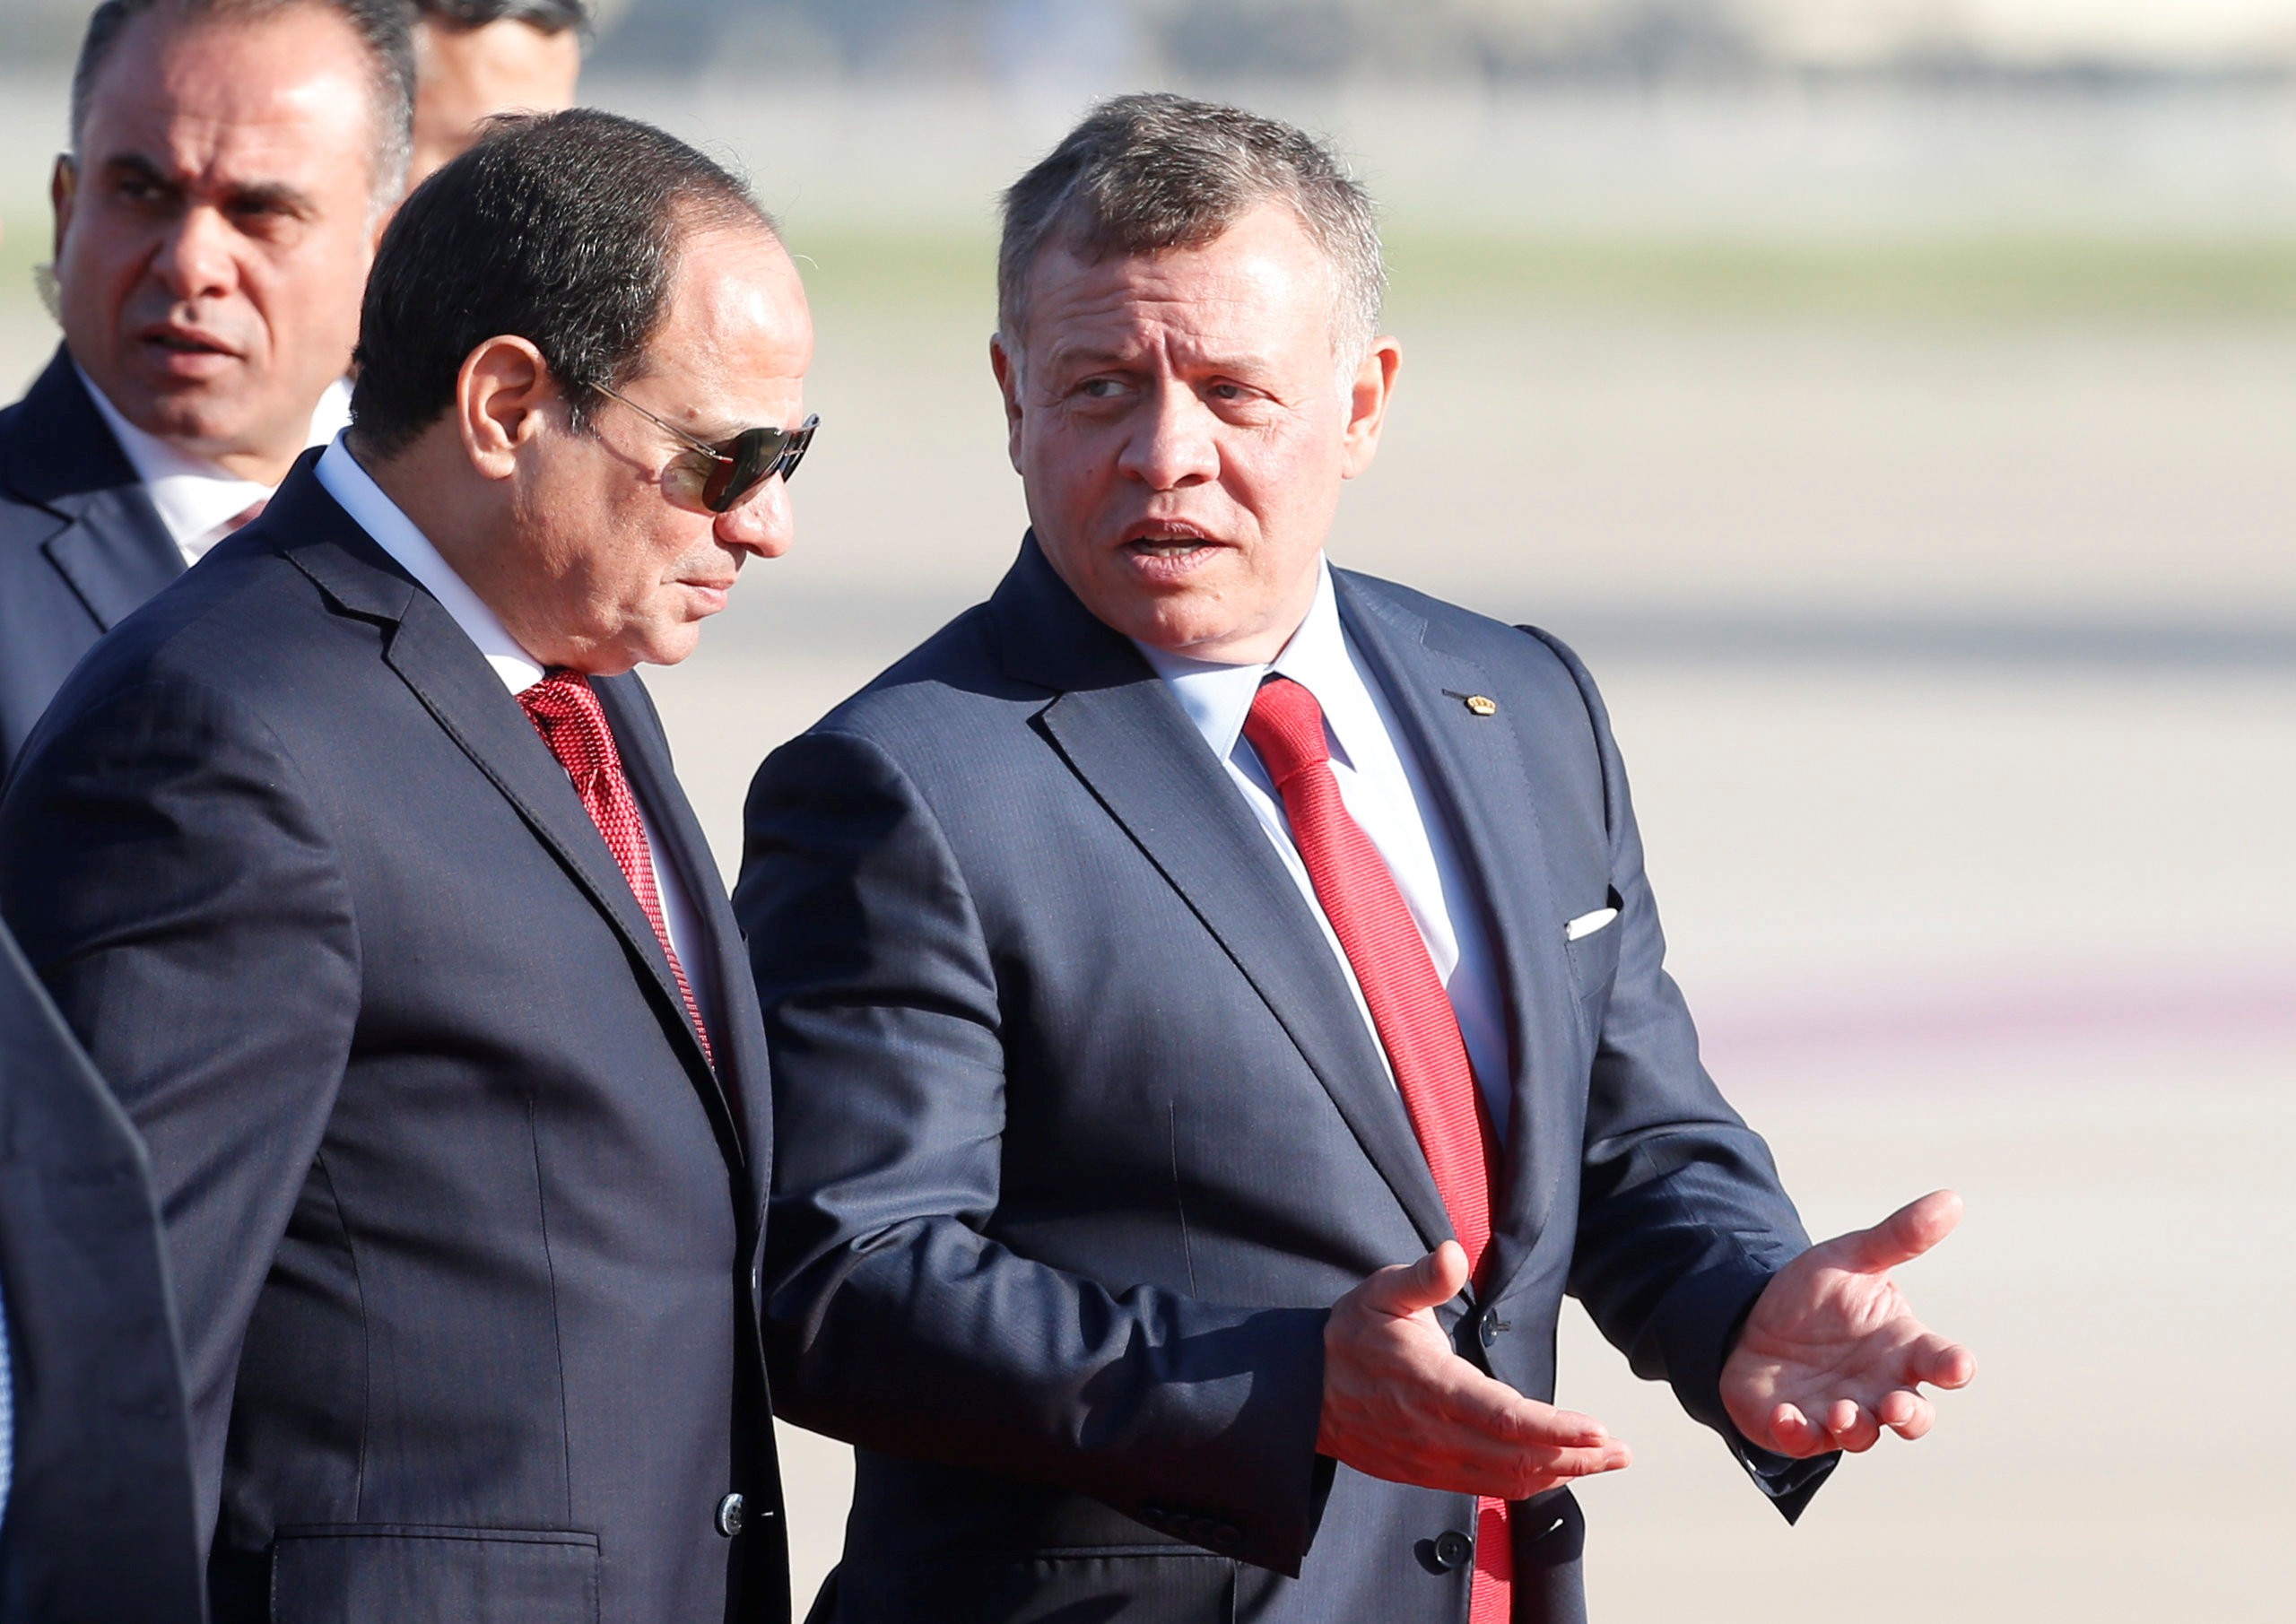 امروز برگزار می شود:نشست رئیس جمهور مصر و پادشاه اردن با موضوع تحولات فلسطین 2